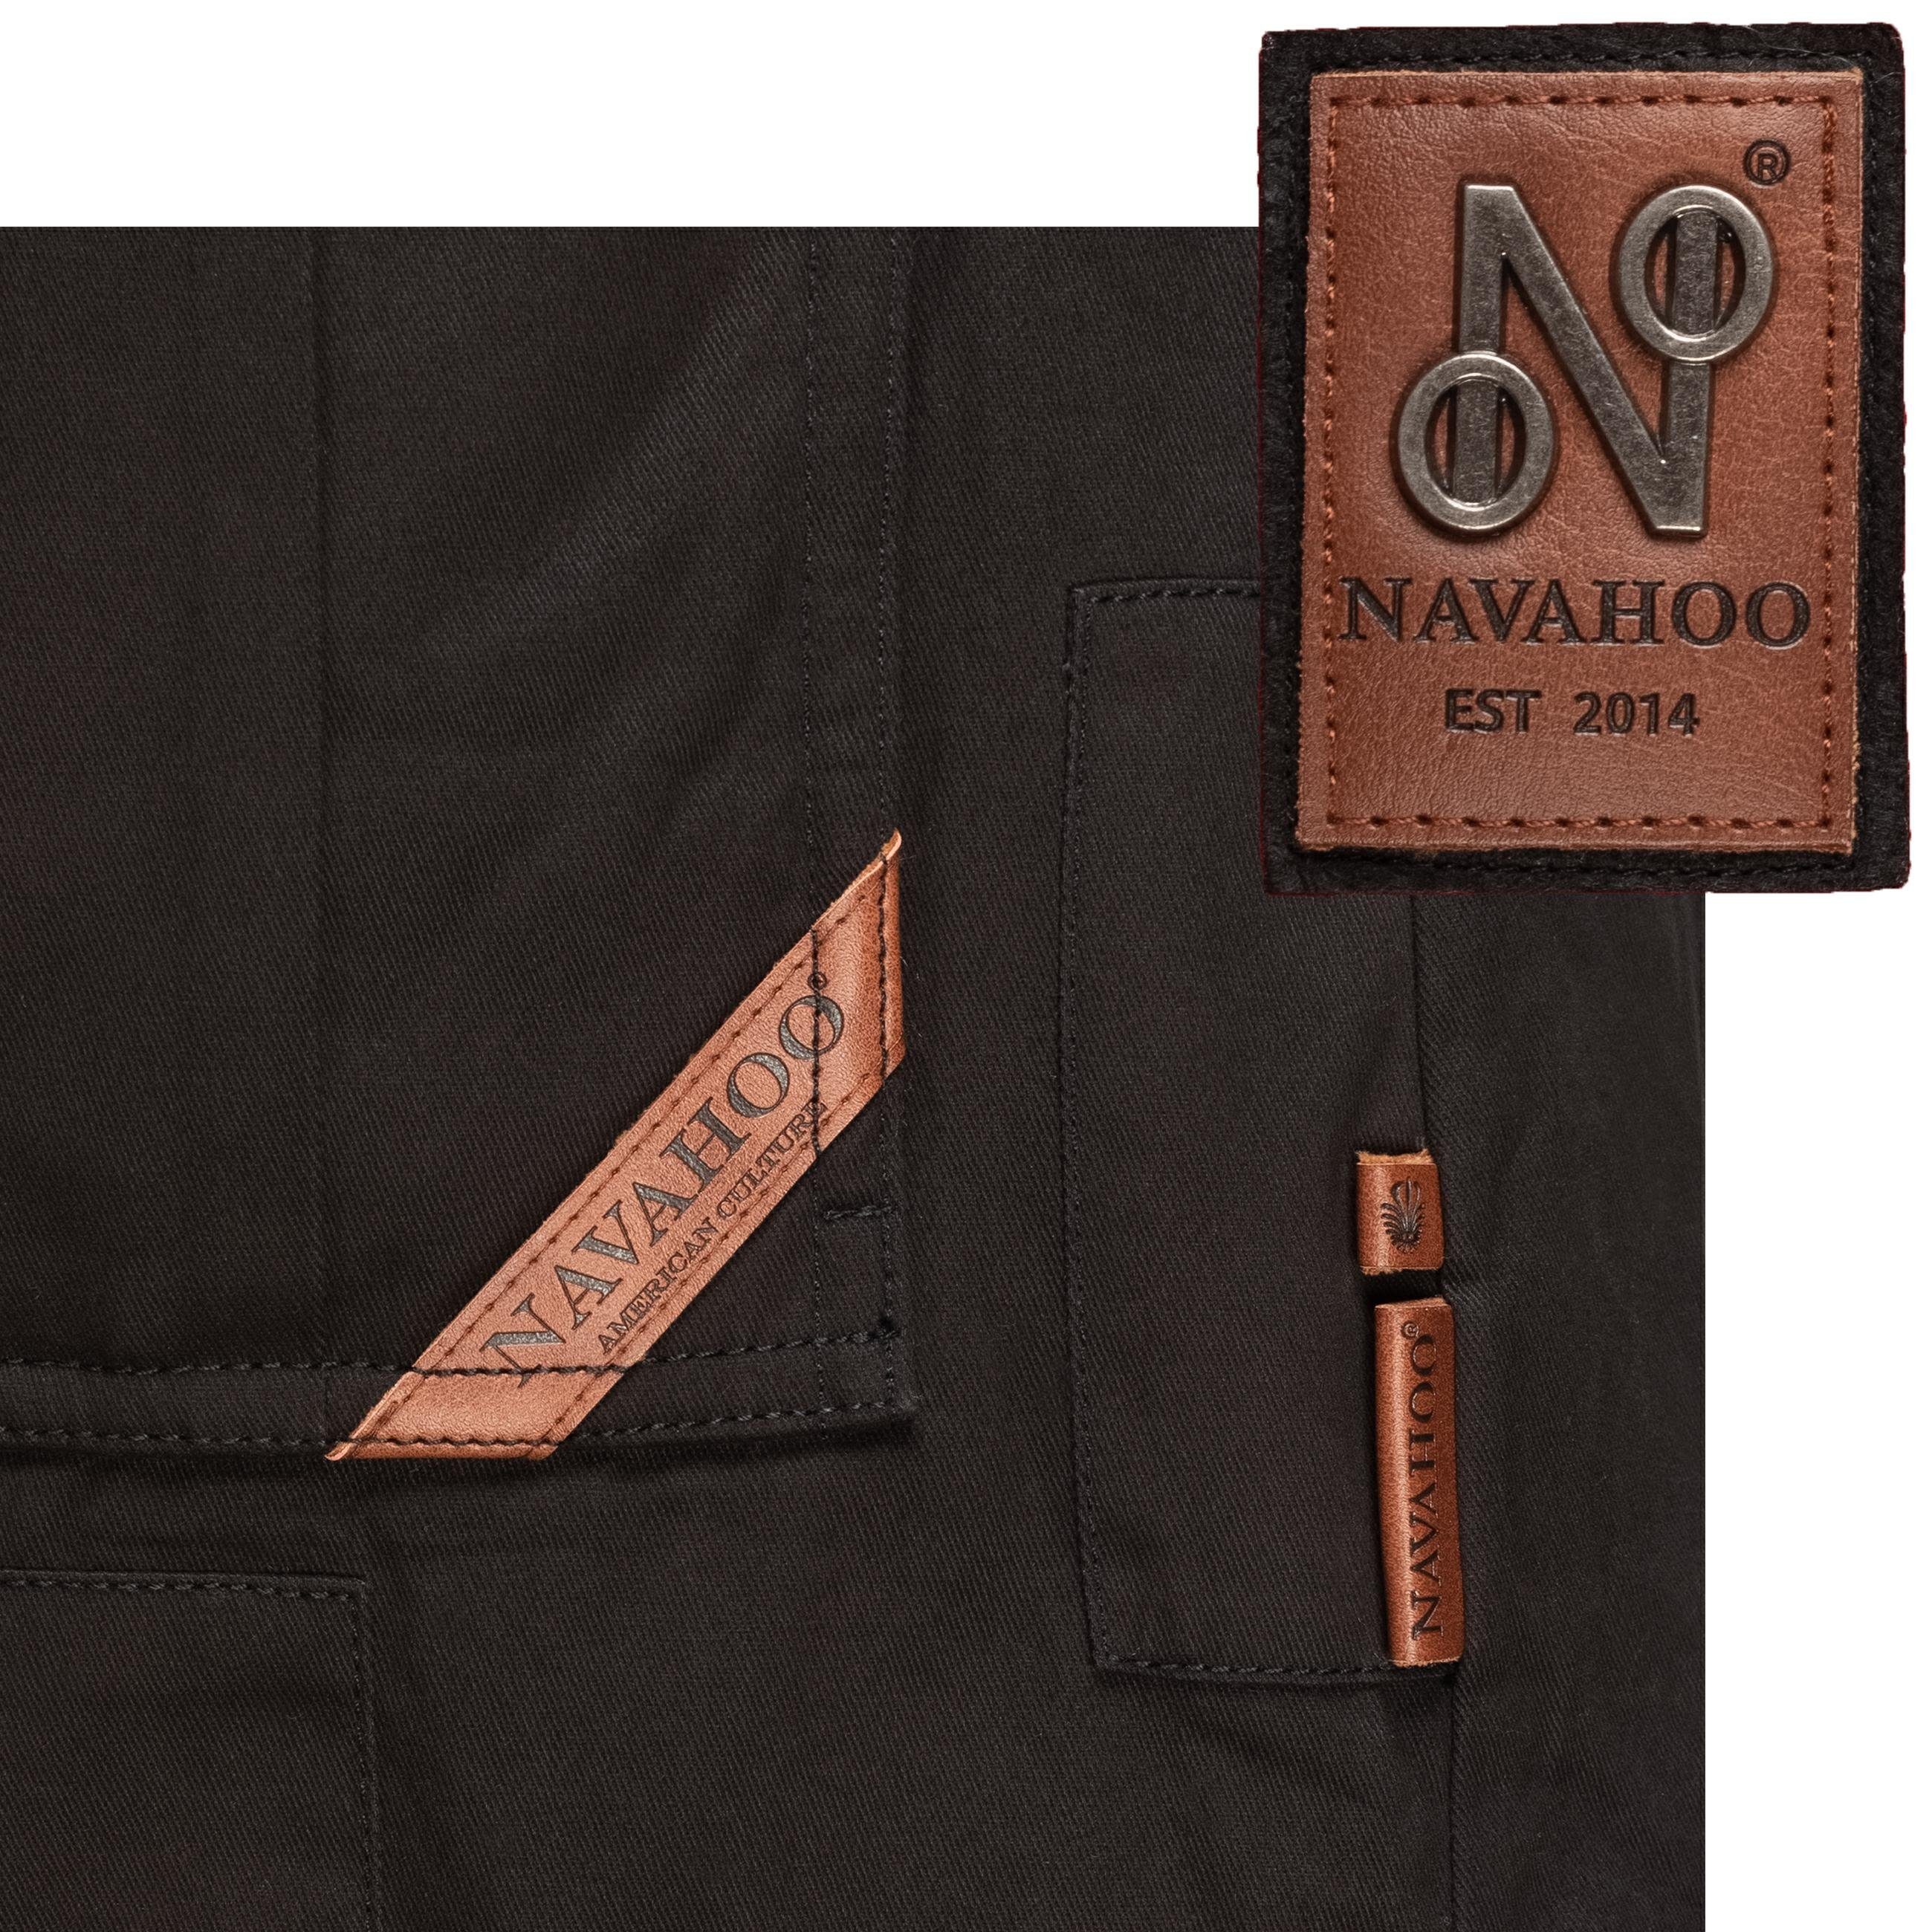 Navahoo Kunstfell-Kapuze mit Honigfee Baumwollparka Wintermantel schwarz stylischer